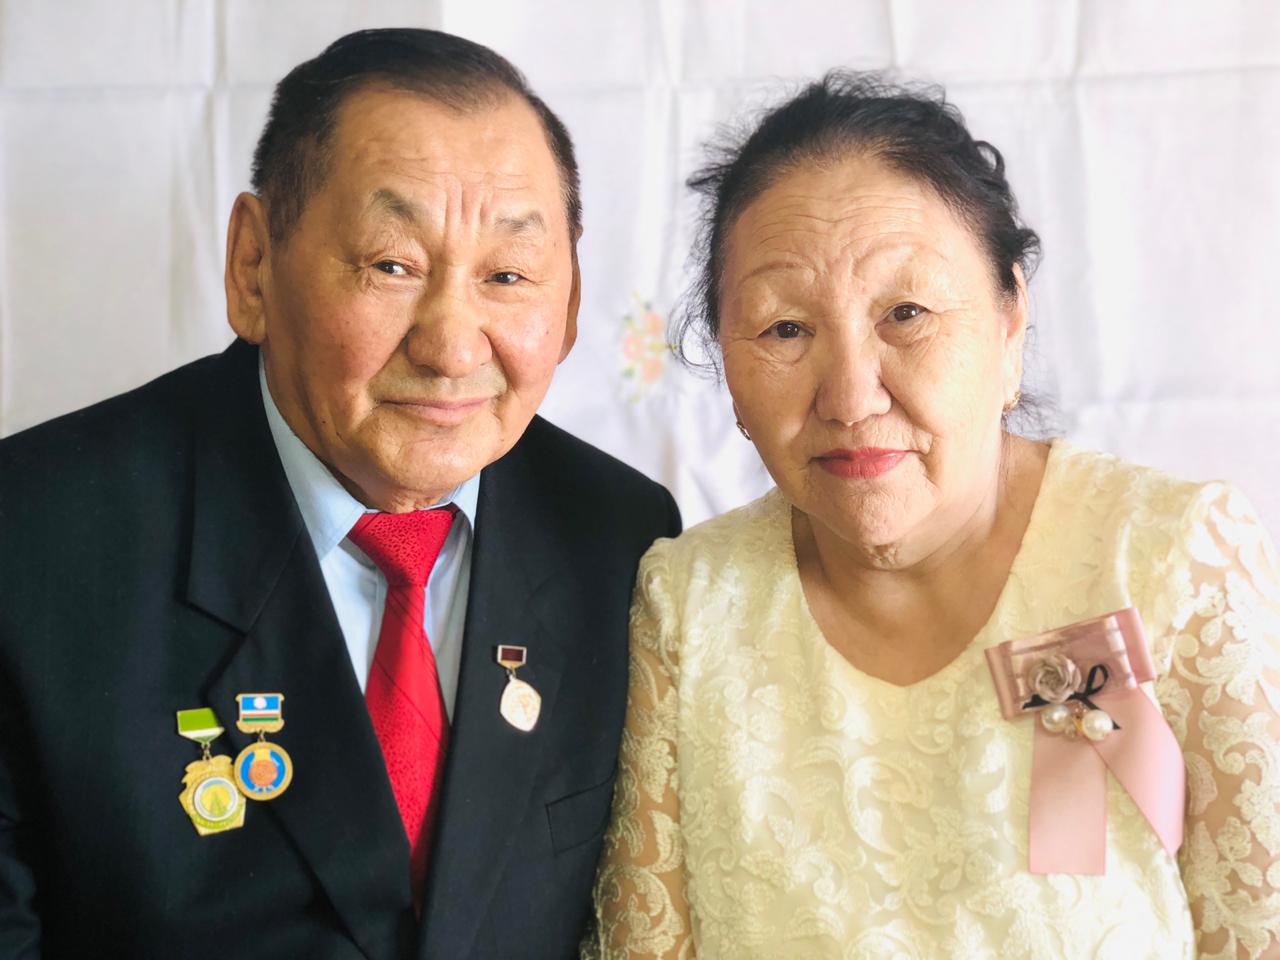 Многодетная семья Сергеевых: «55 лет вместе благодаря взаимному пониманию и поддержке»